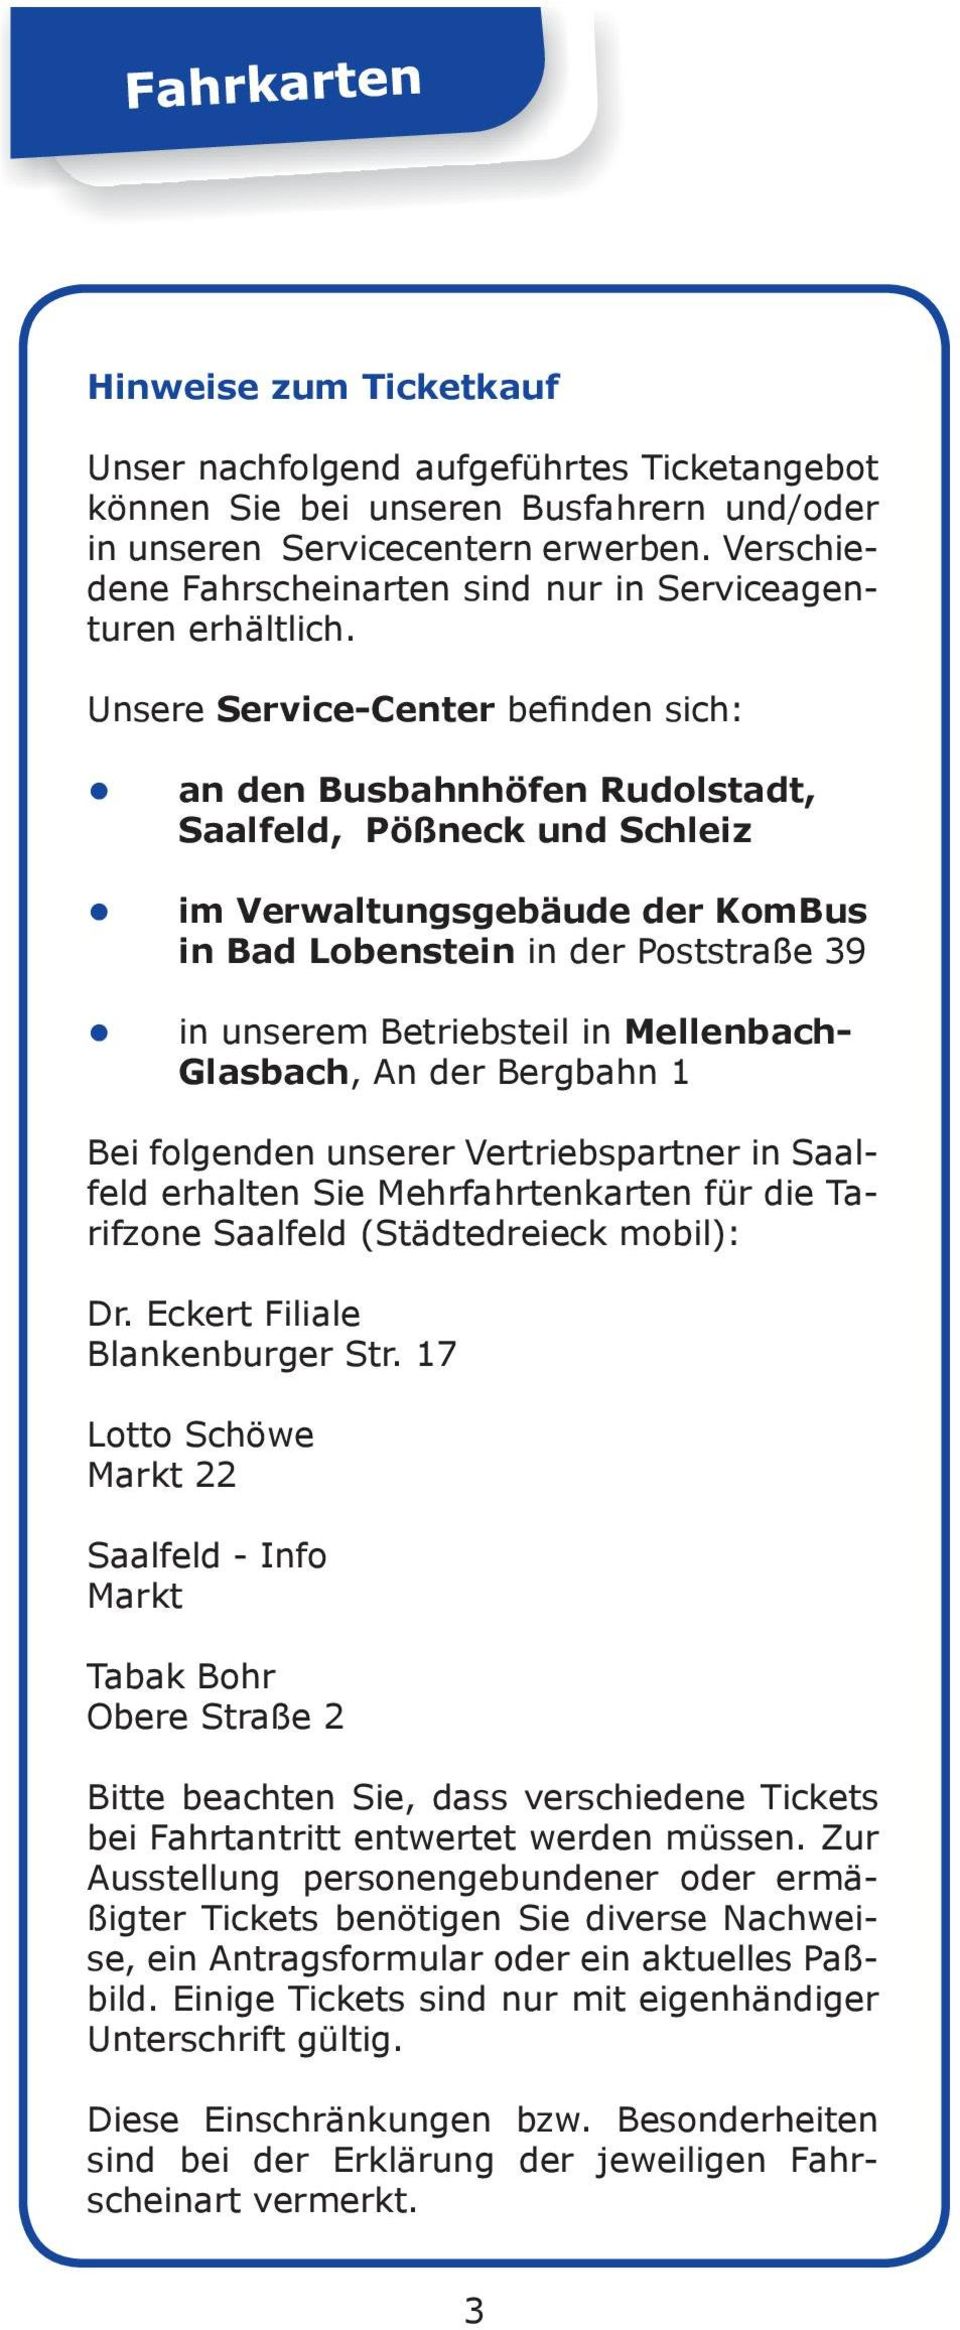 Unsere Service-Center befinden sich: an den Busbahnhöfen Rudolstadt, Saalfeld, Pößneck und Schleiz im Verwaltungsgebäude der KomBus in Bad Lobenstein in der Poststraße 39 in unserem Betriebsteil in